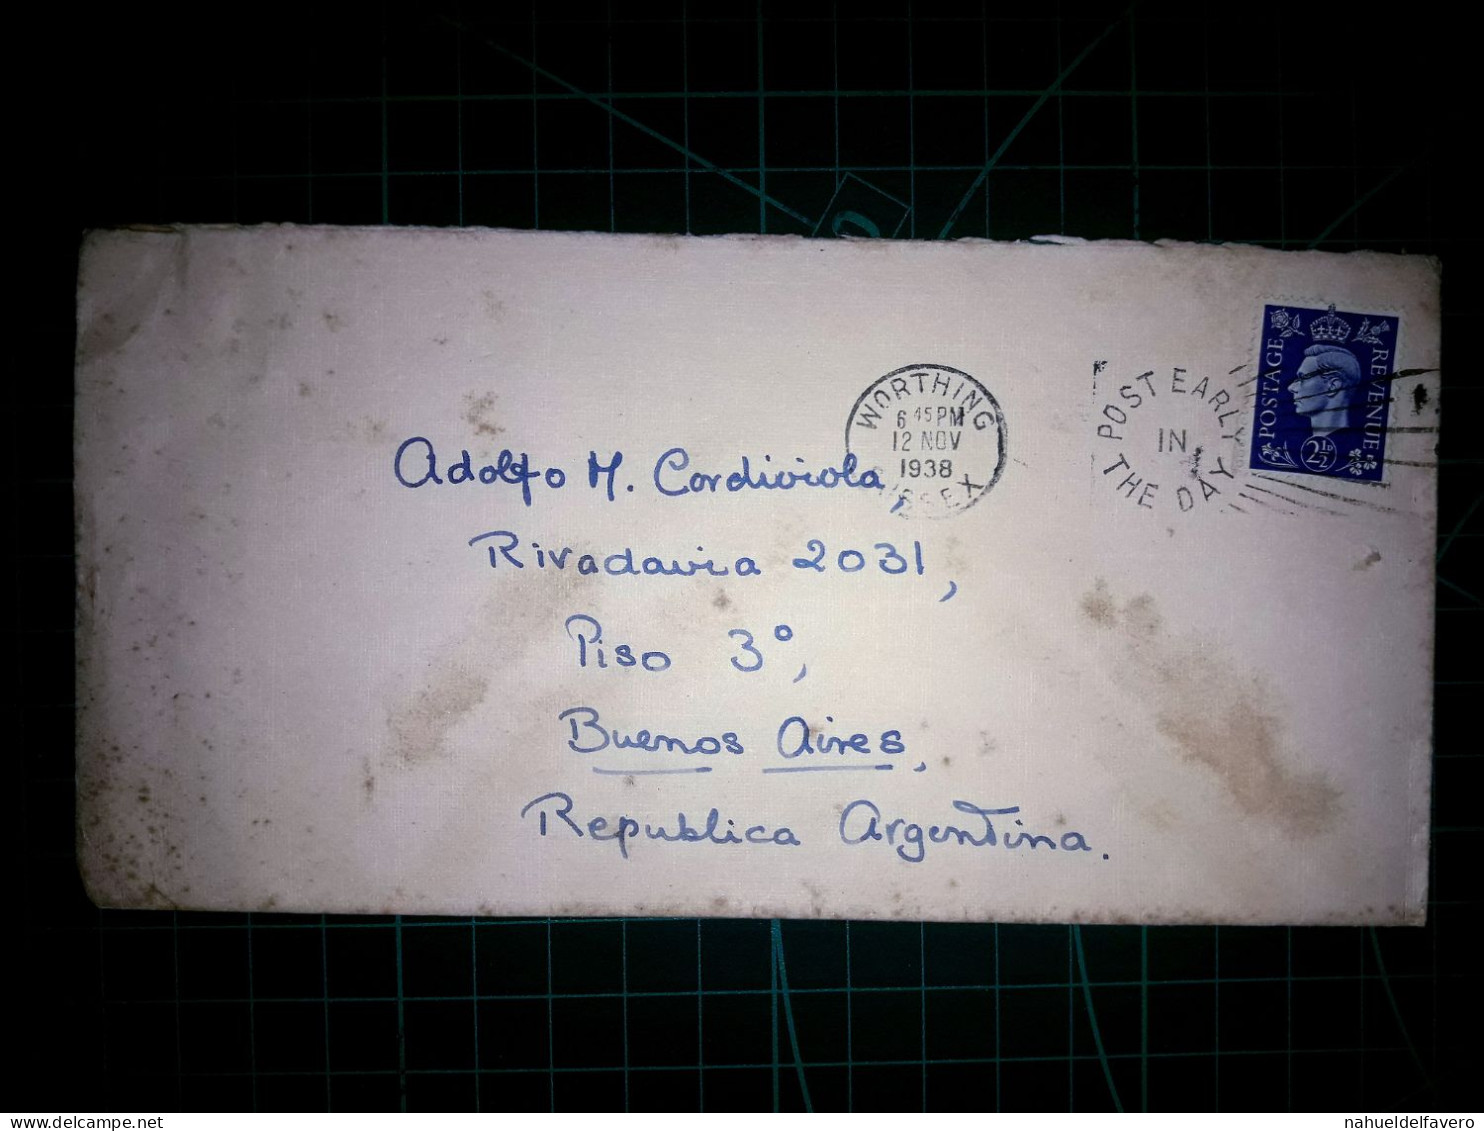 ANGLETERRE, Enveloppe Circulée Avec Cachet De La Poste Spécial. Années 1930. - Gebruikt